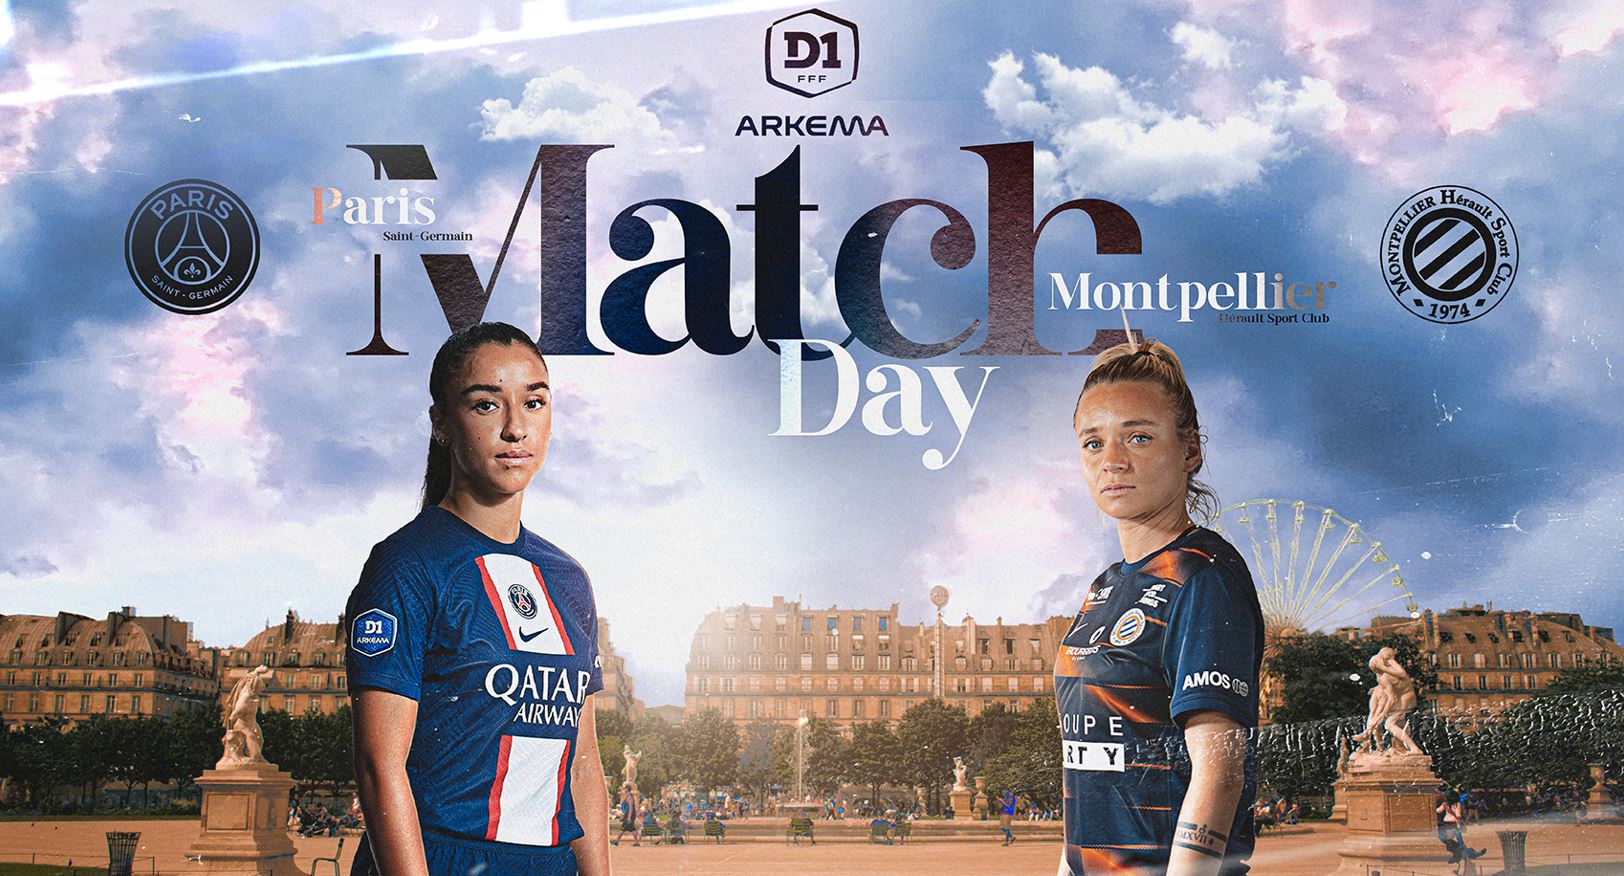 Paris SG / Montpellier (TV/Streaming) Sur quelle chaîne et à quelle heure voir le match de D1 Arkéma ?